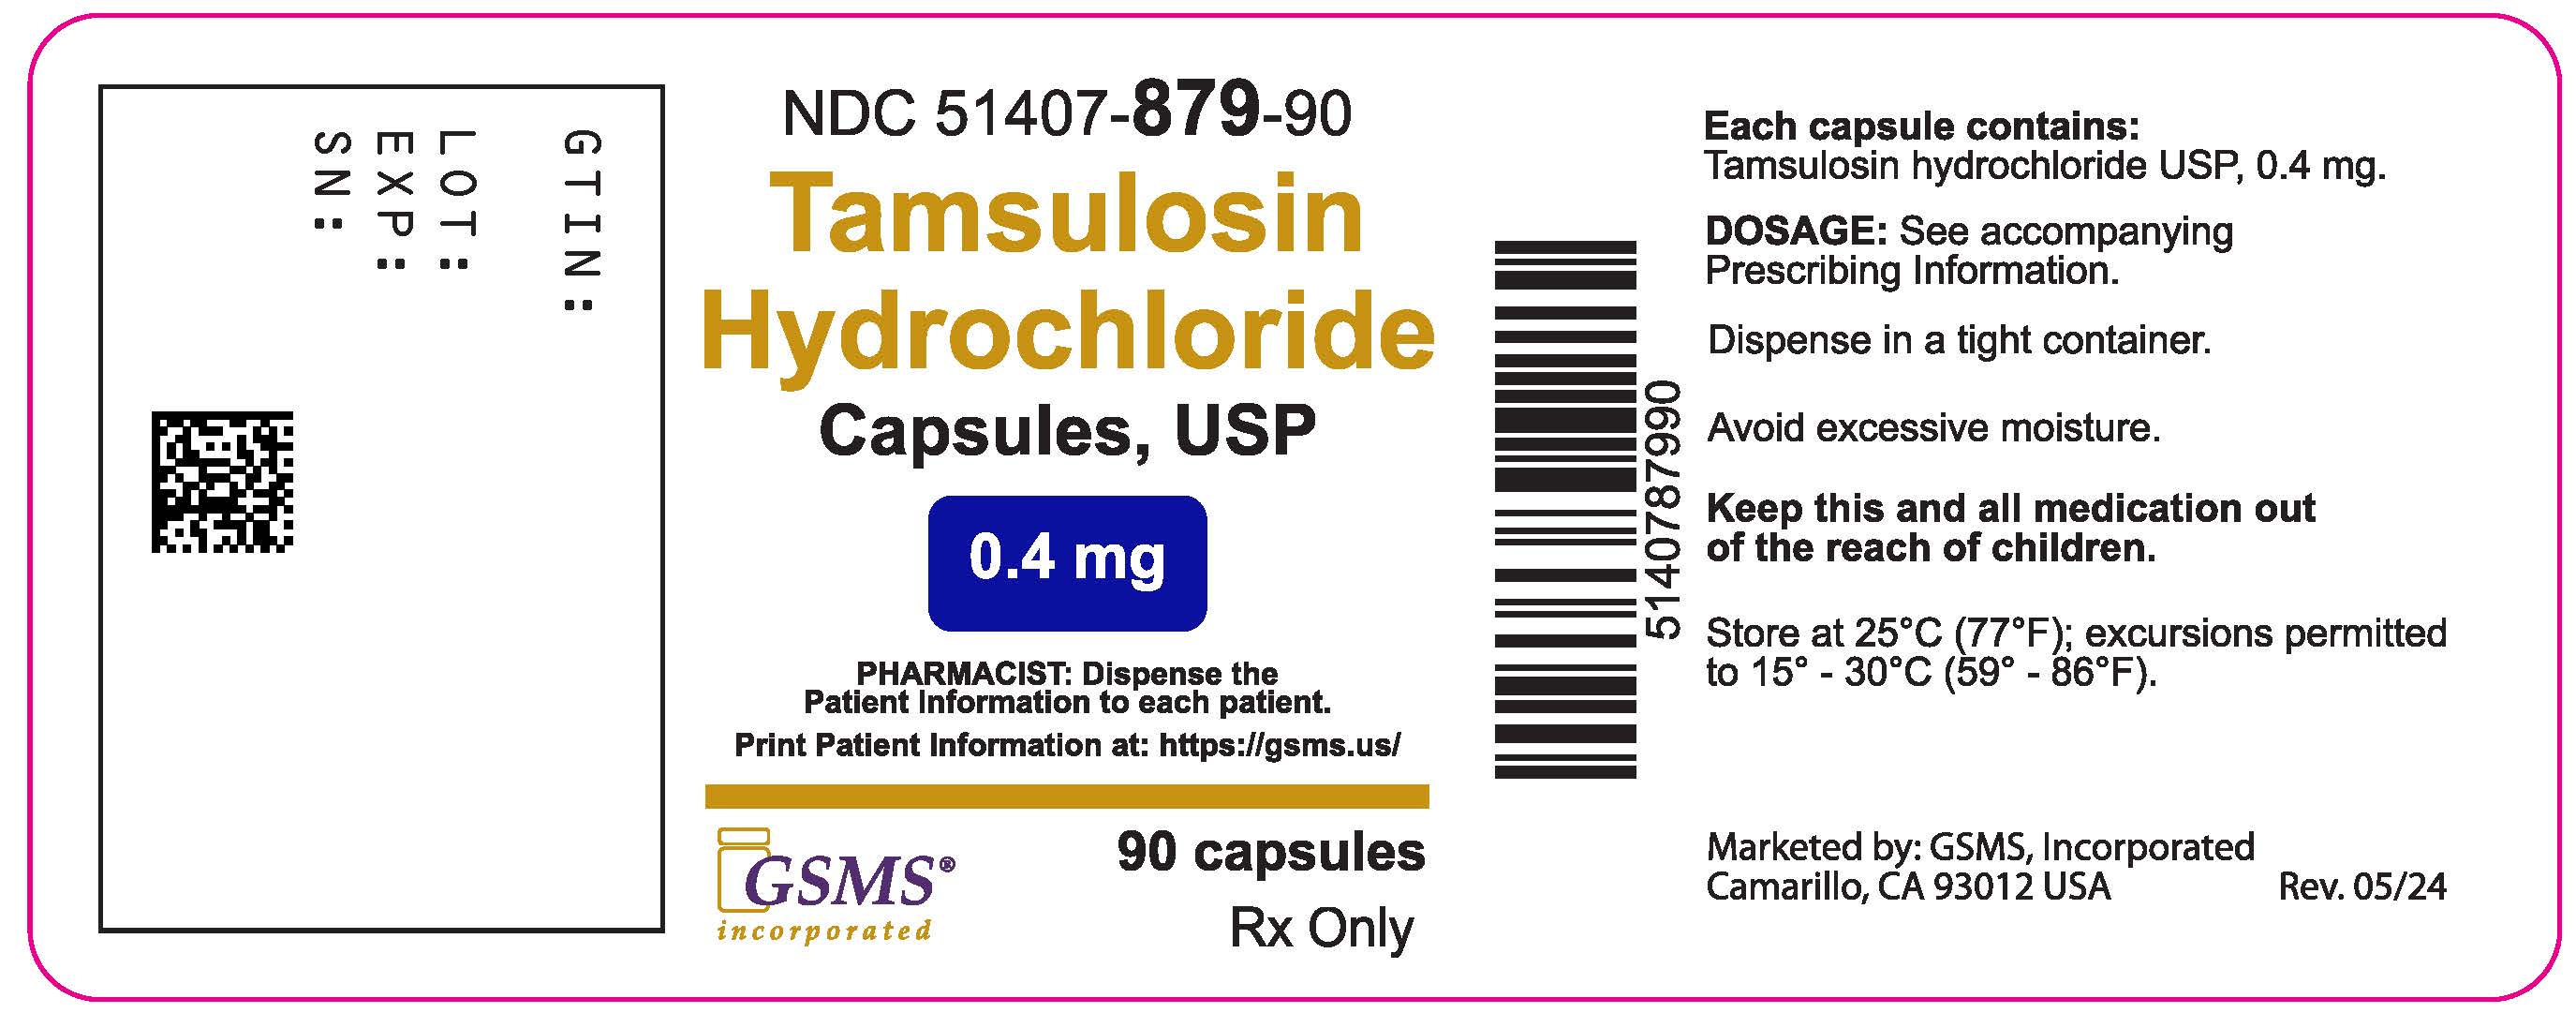 51407-879-90LB - Tamsulosin HCI 0.4 mg - Rev. 0524.jpg